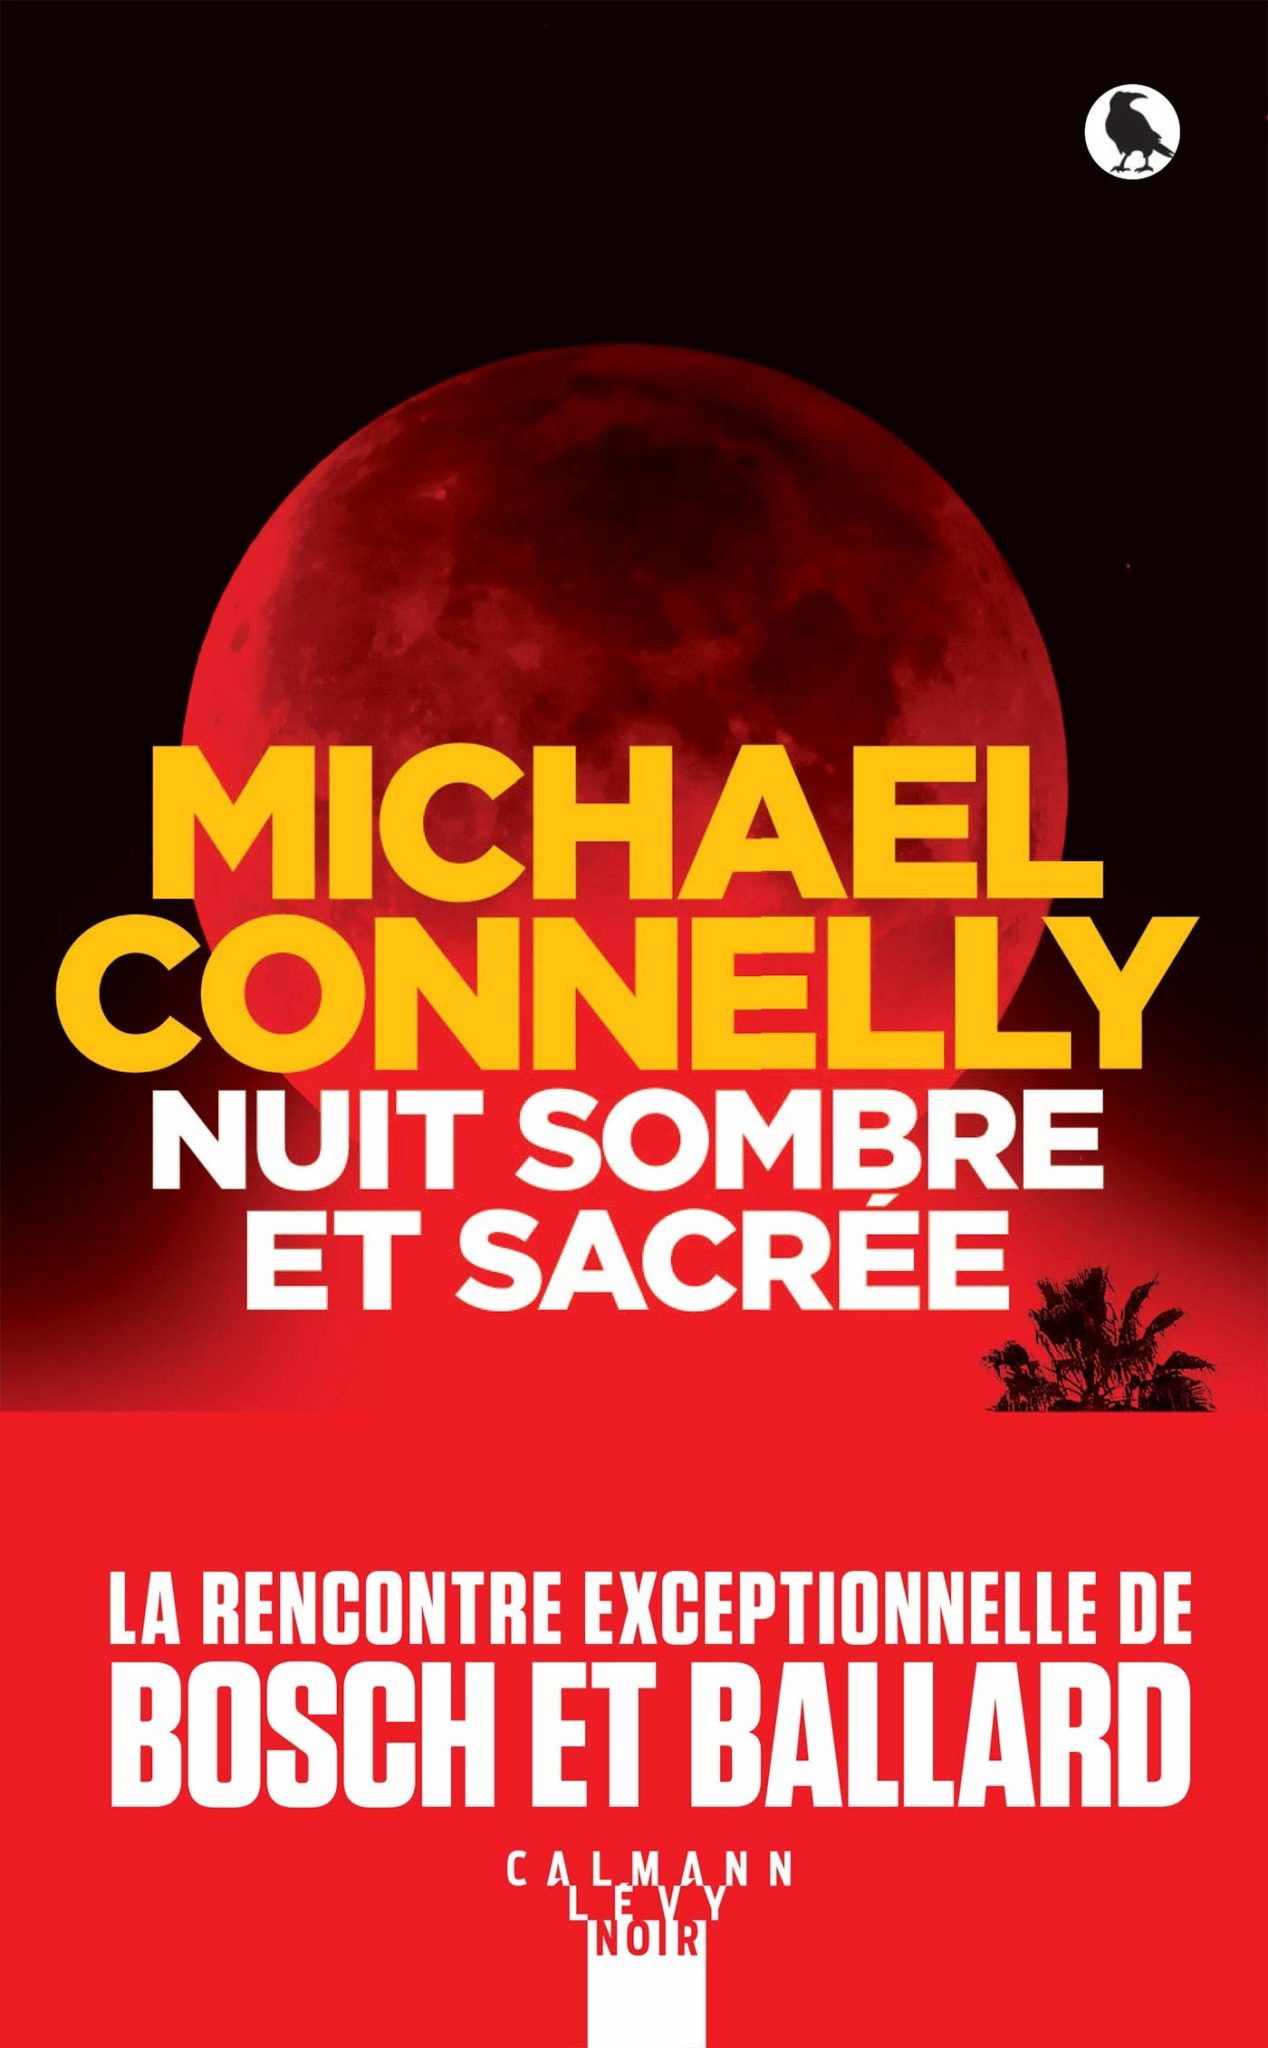 Nuit sombre et sacrée Michel Connelly livre critique avis 2020 couverture